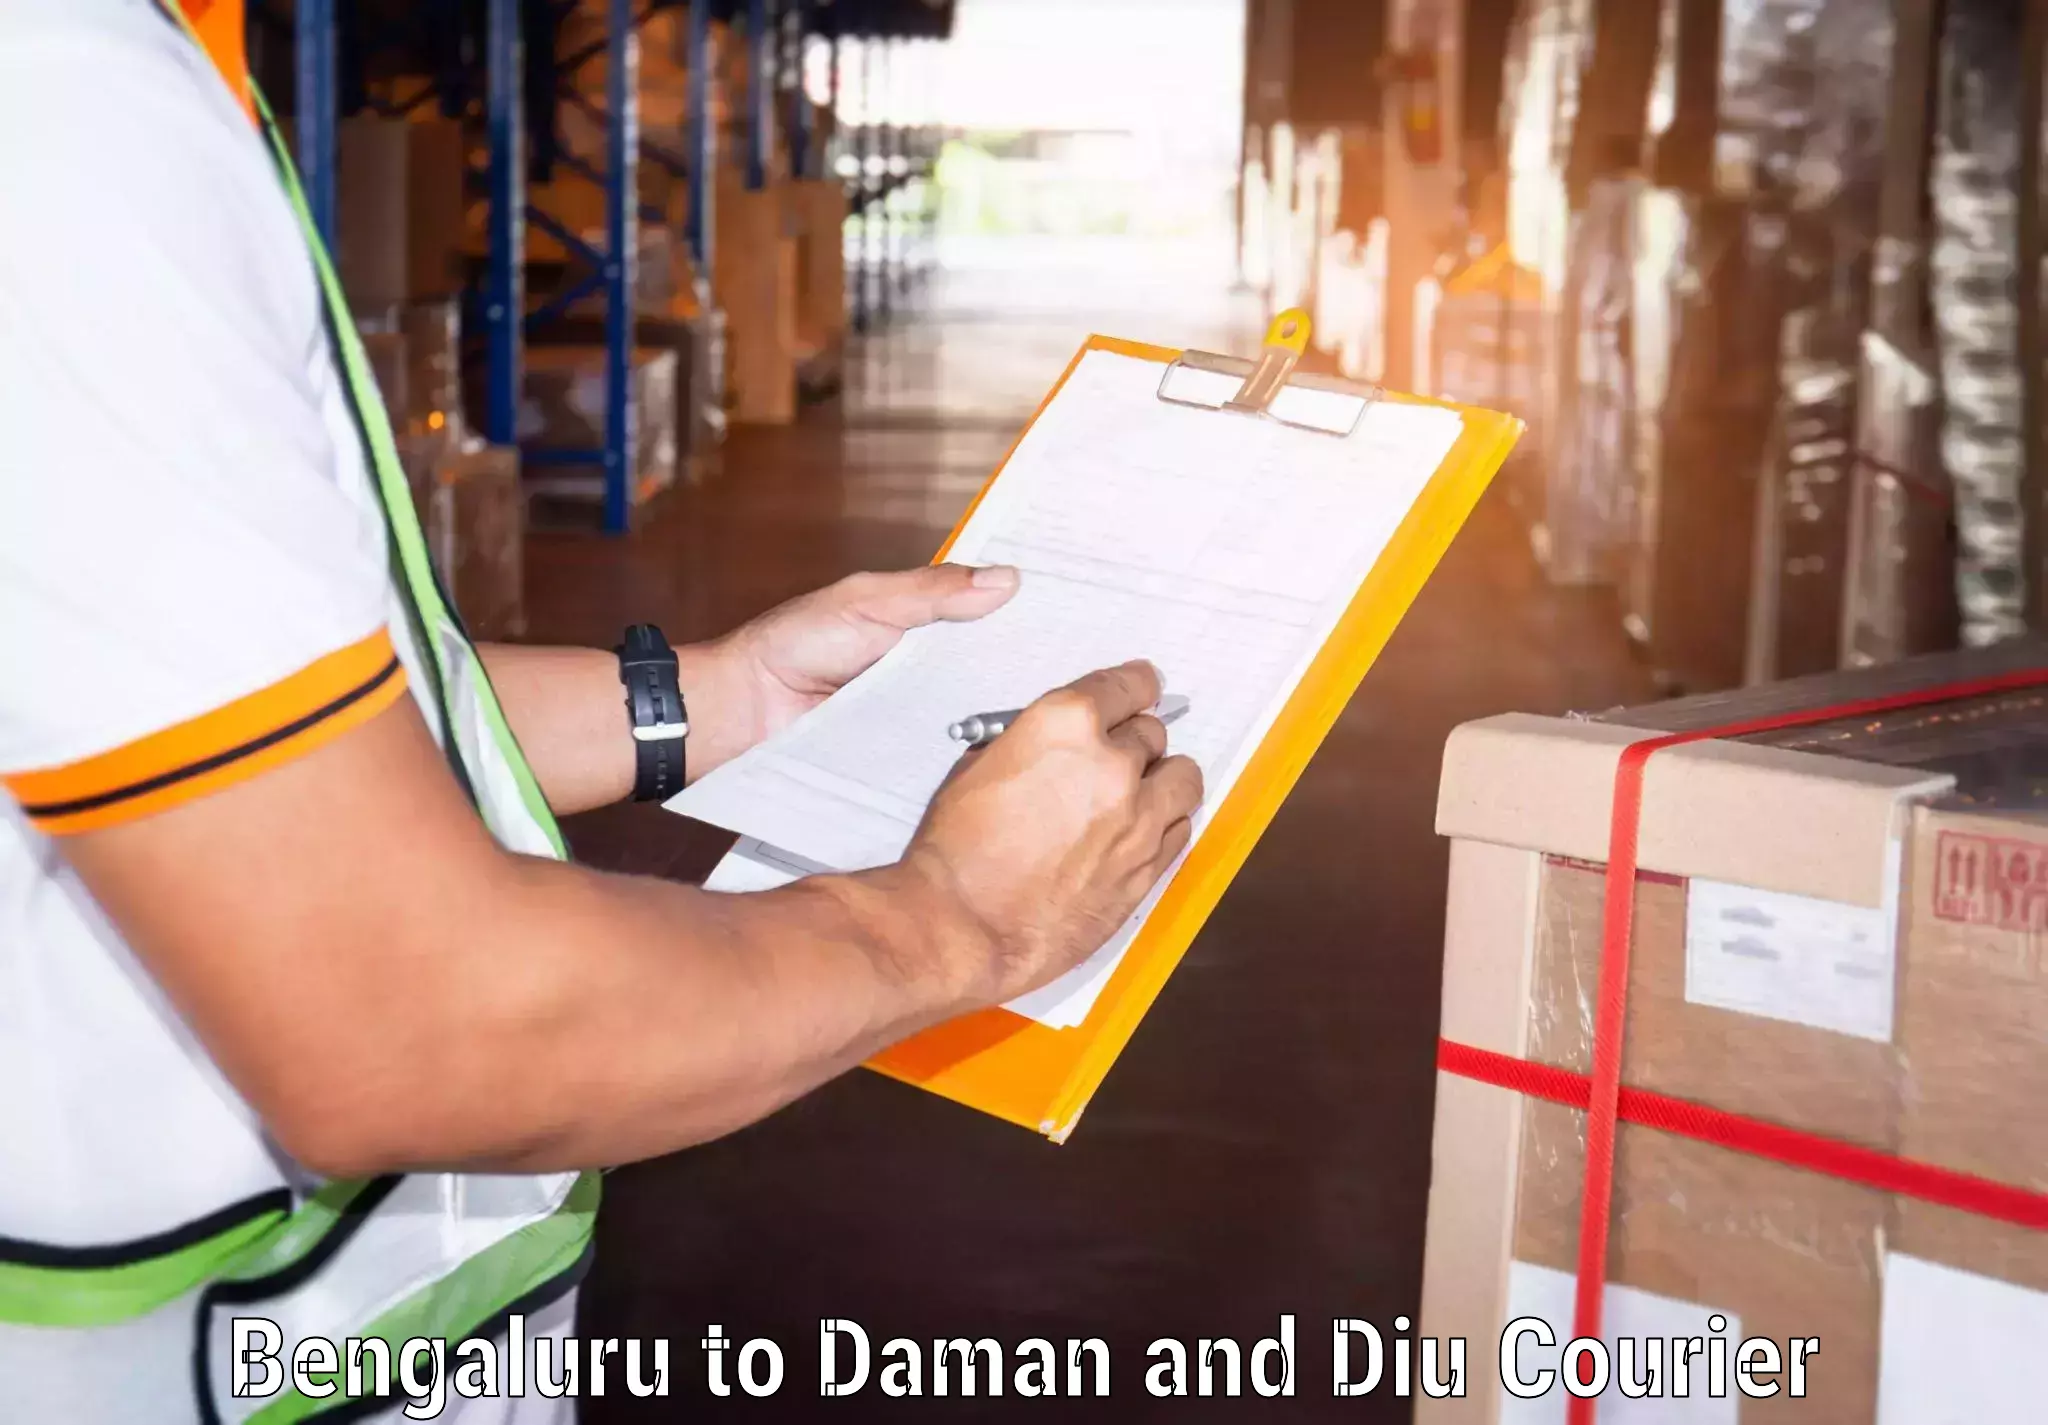 Customer-centric shipping Bengaluru to Daman and Diu